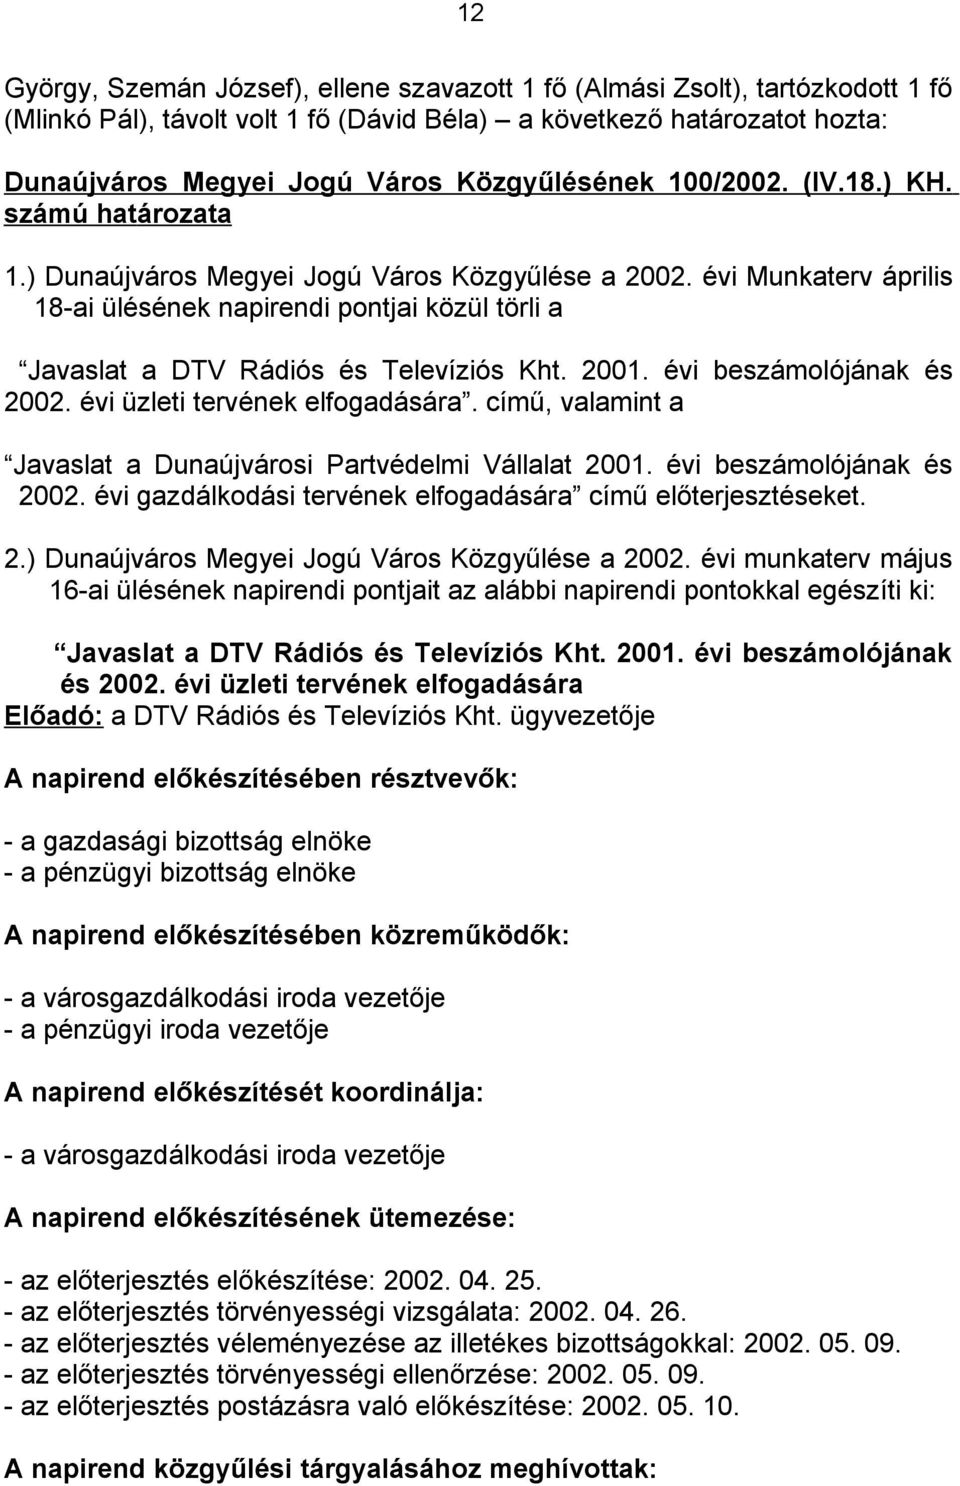 évi Munkaterv április 18-ai ülésének napirendi pontjai közül törli a Javaslat a DTV Rádiós és Televíziós Kht. 2001. évi beszámolójának és 2002. évi üzleti tervének elfogadására.